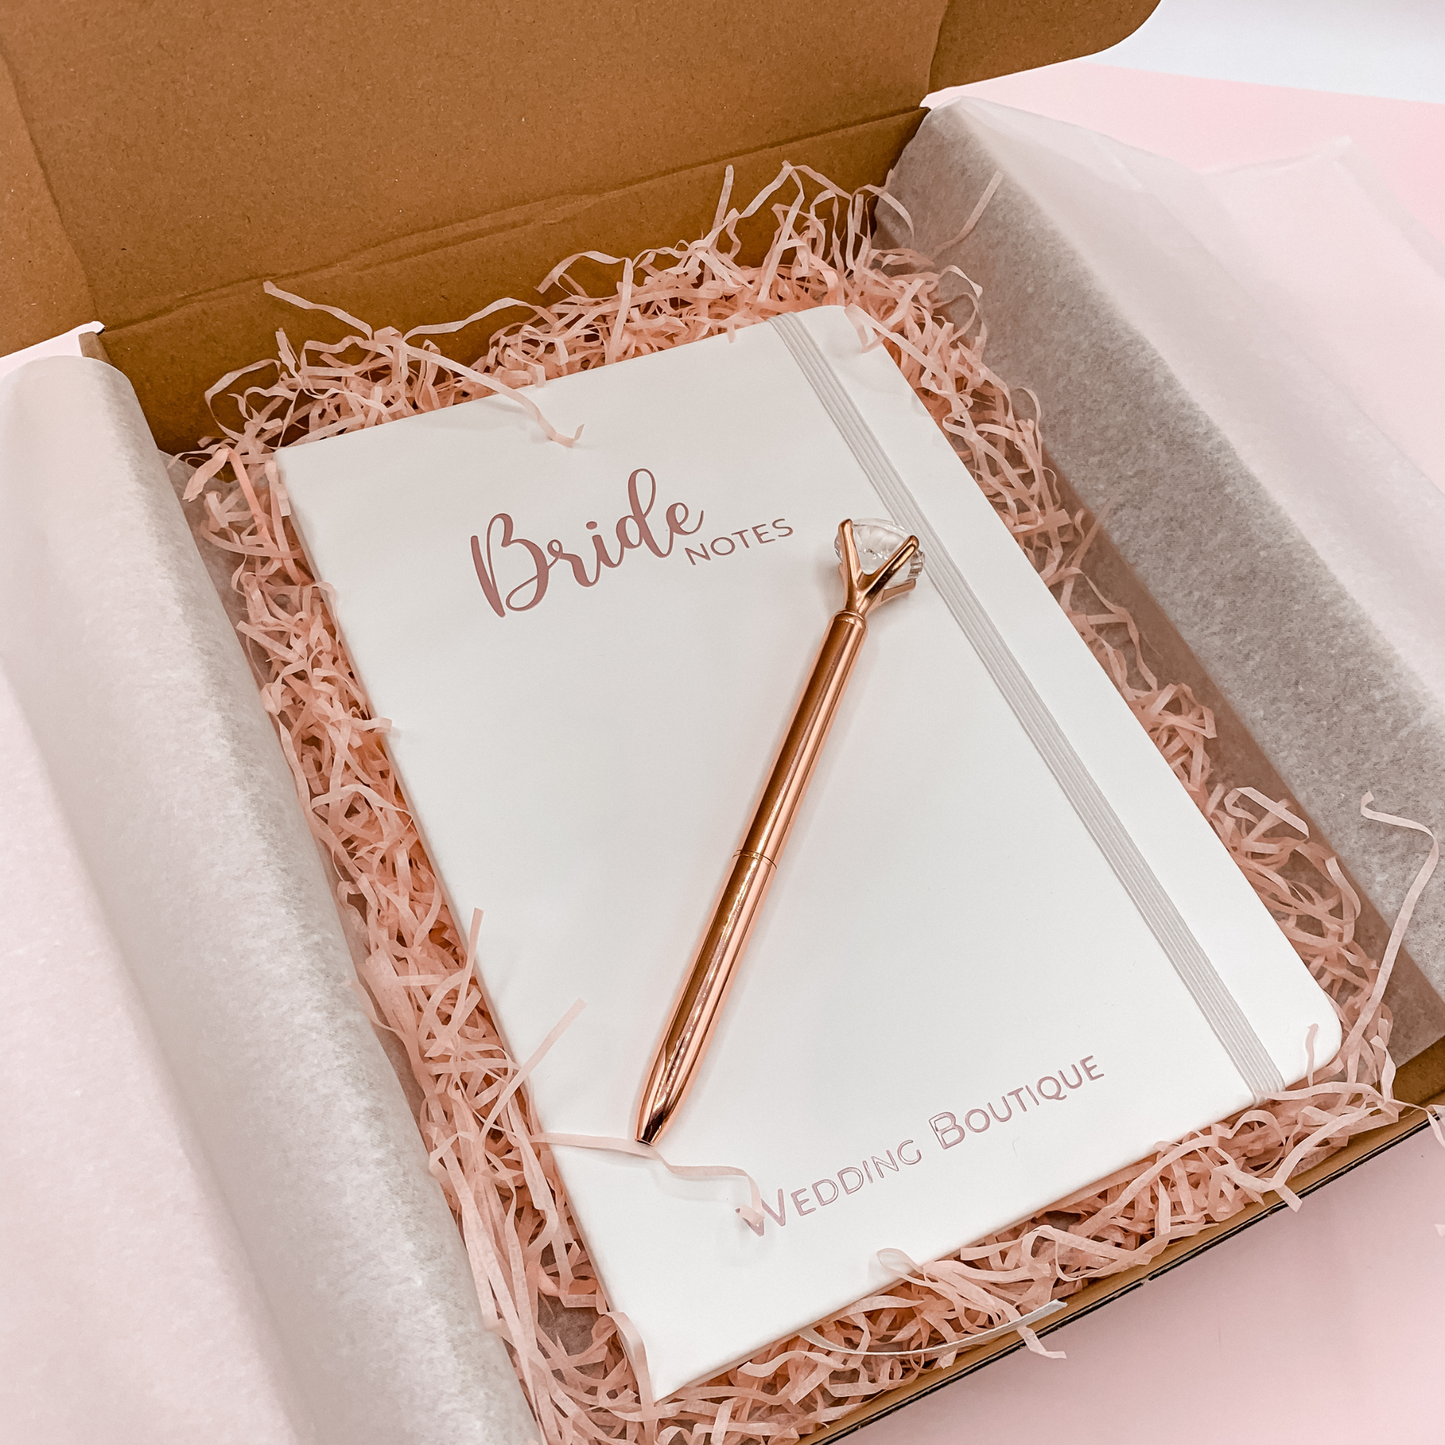 WB Gift Box "Bride Notes"